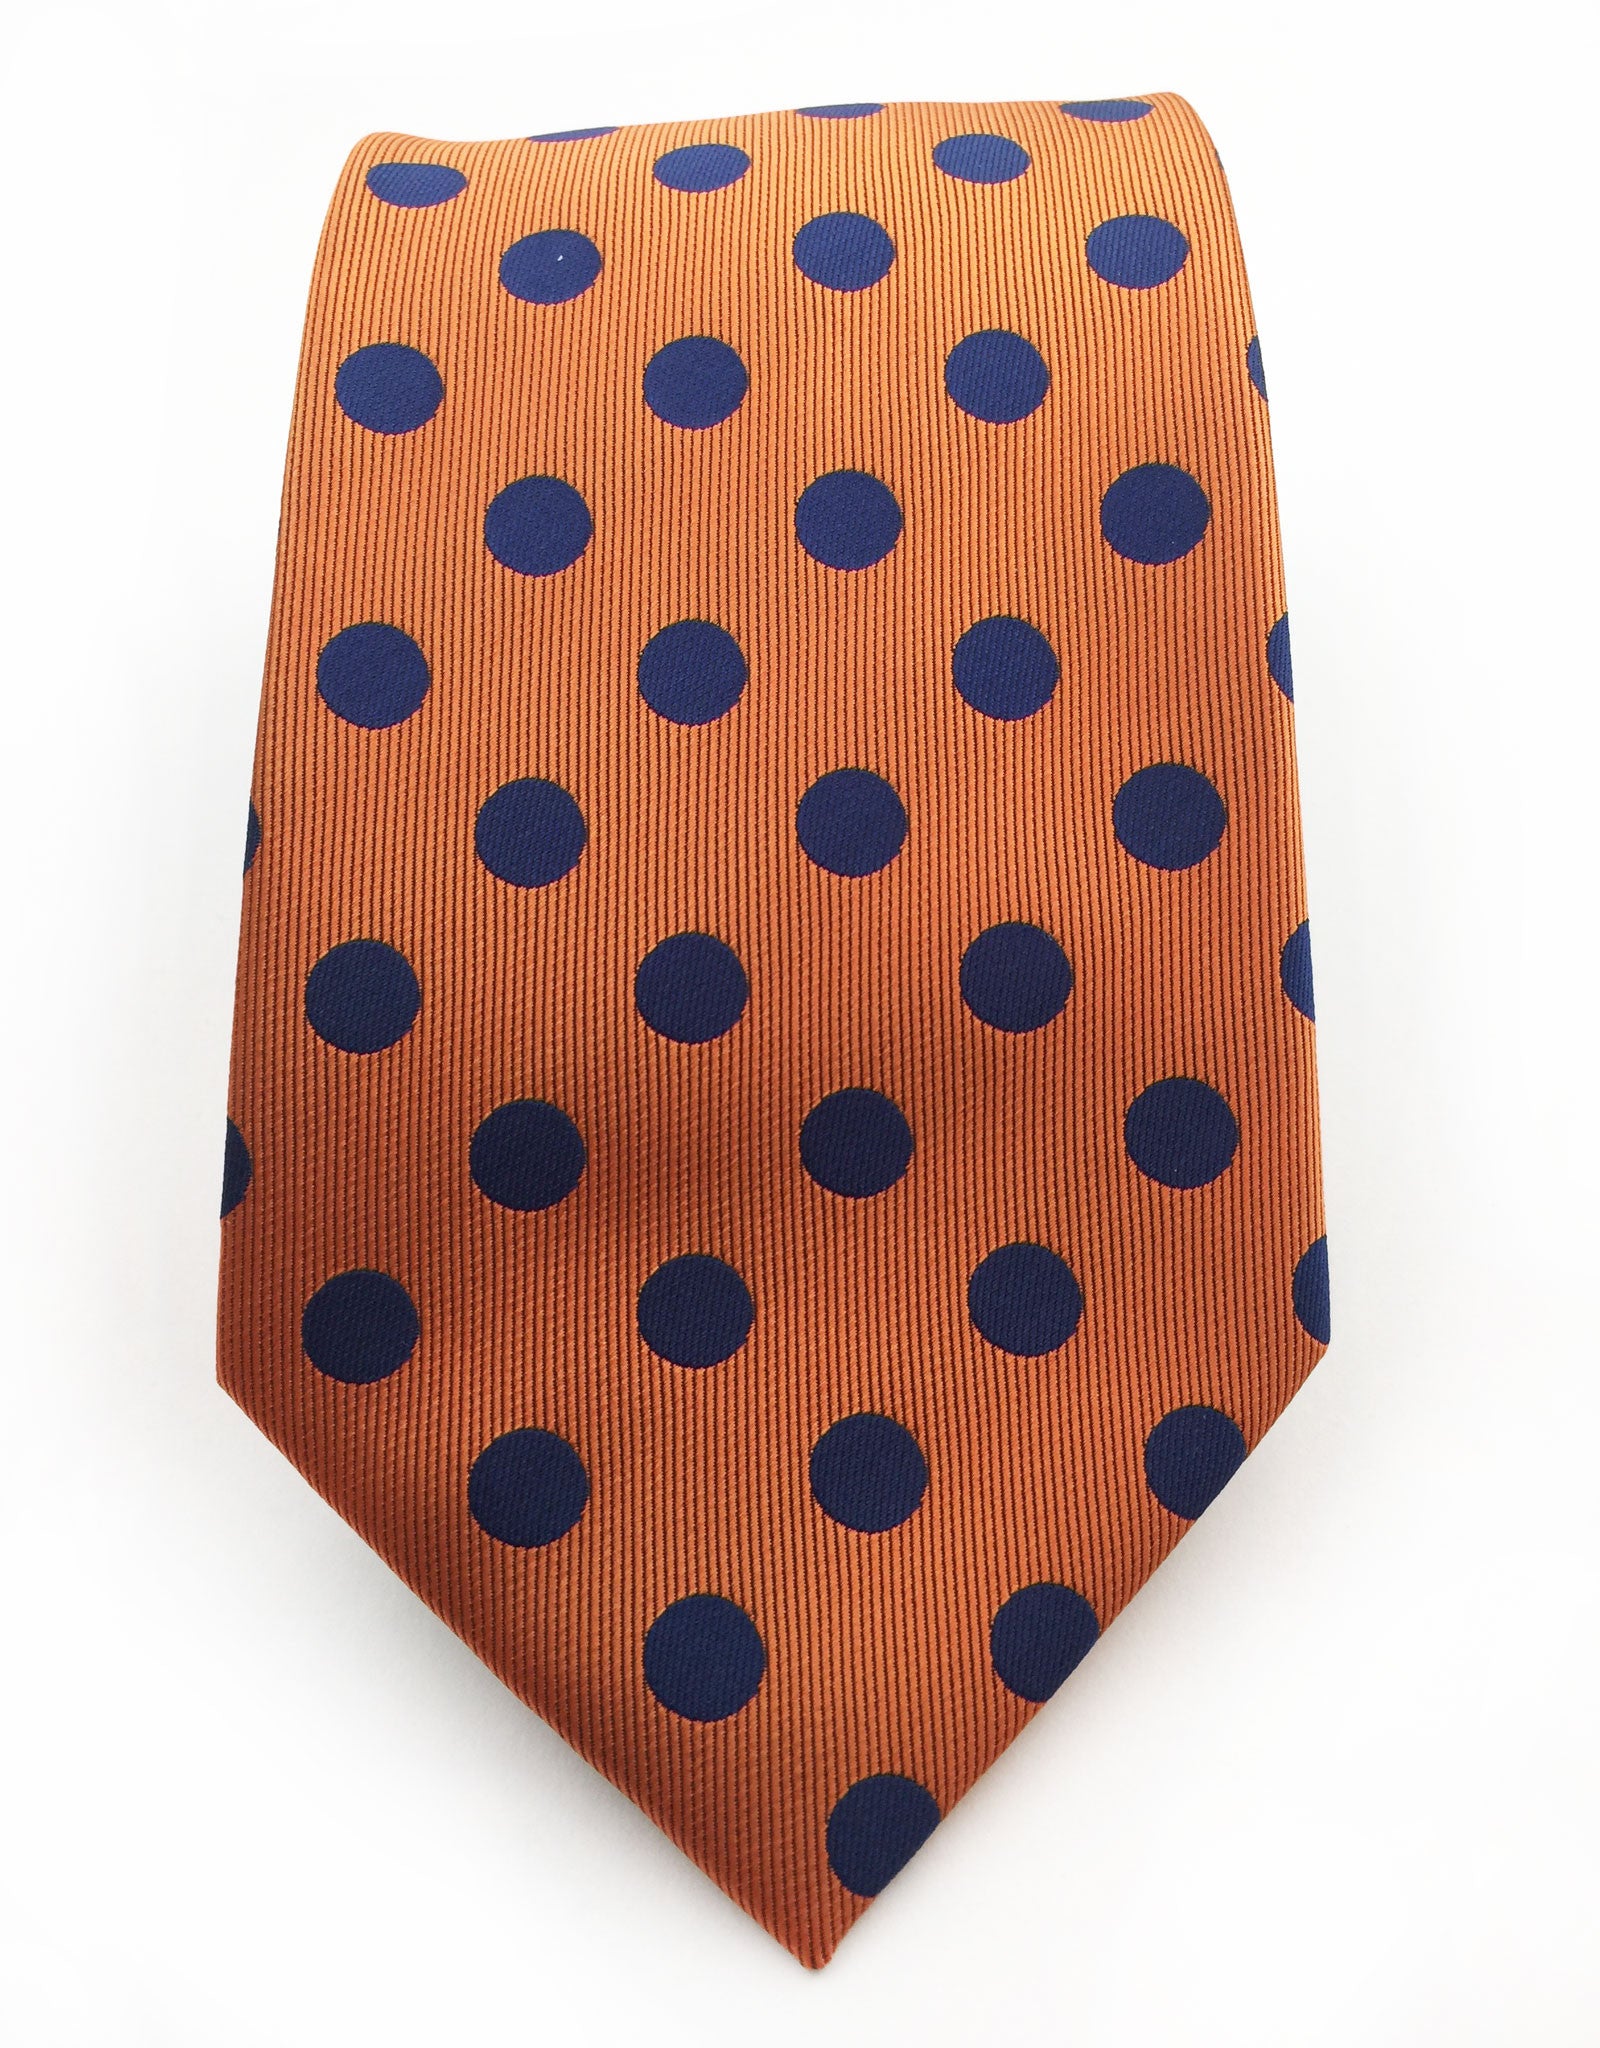 Orange And Navy Blue Polka Dot Tie Gentlemanjoe